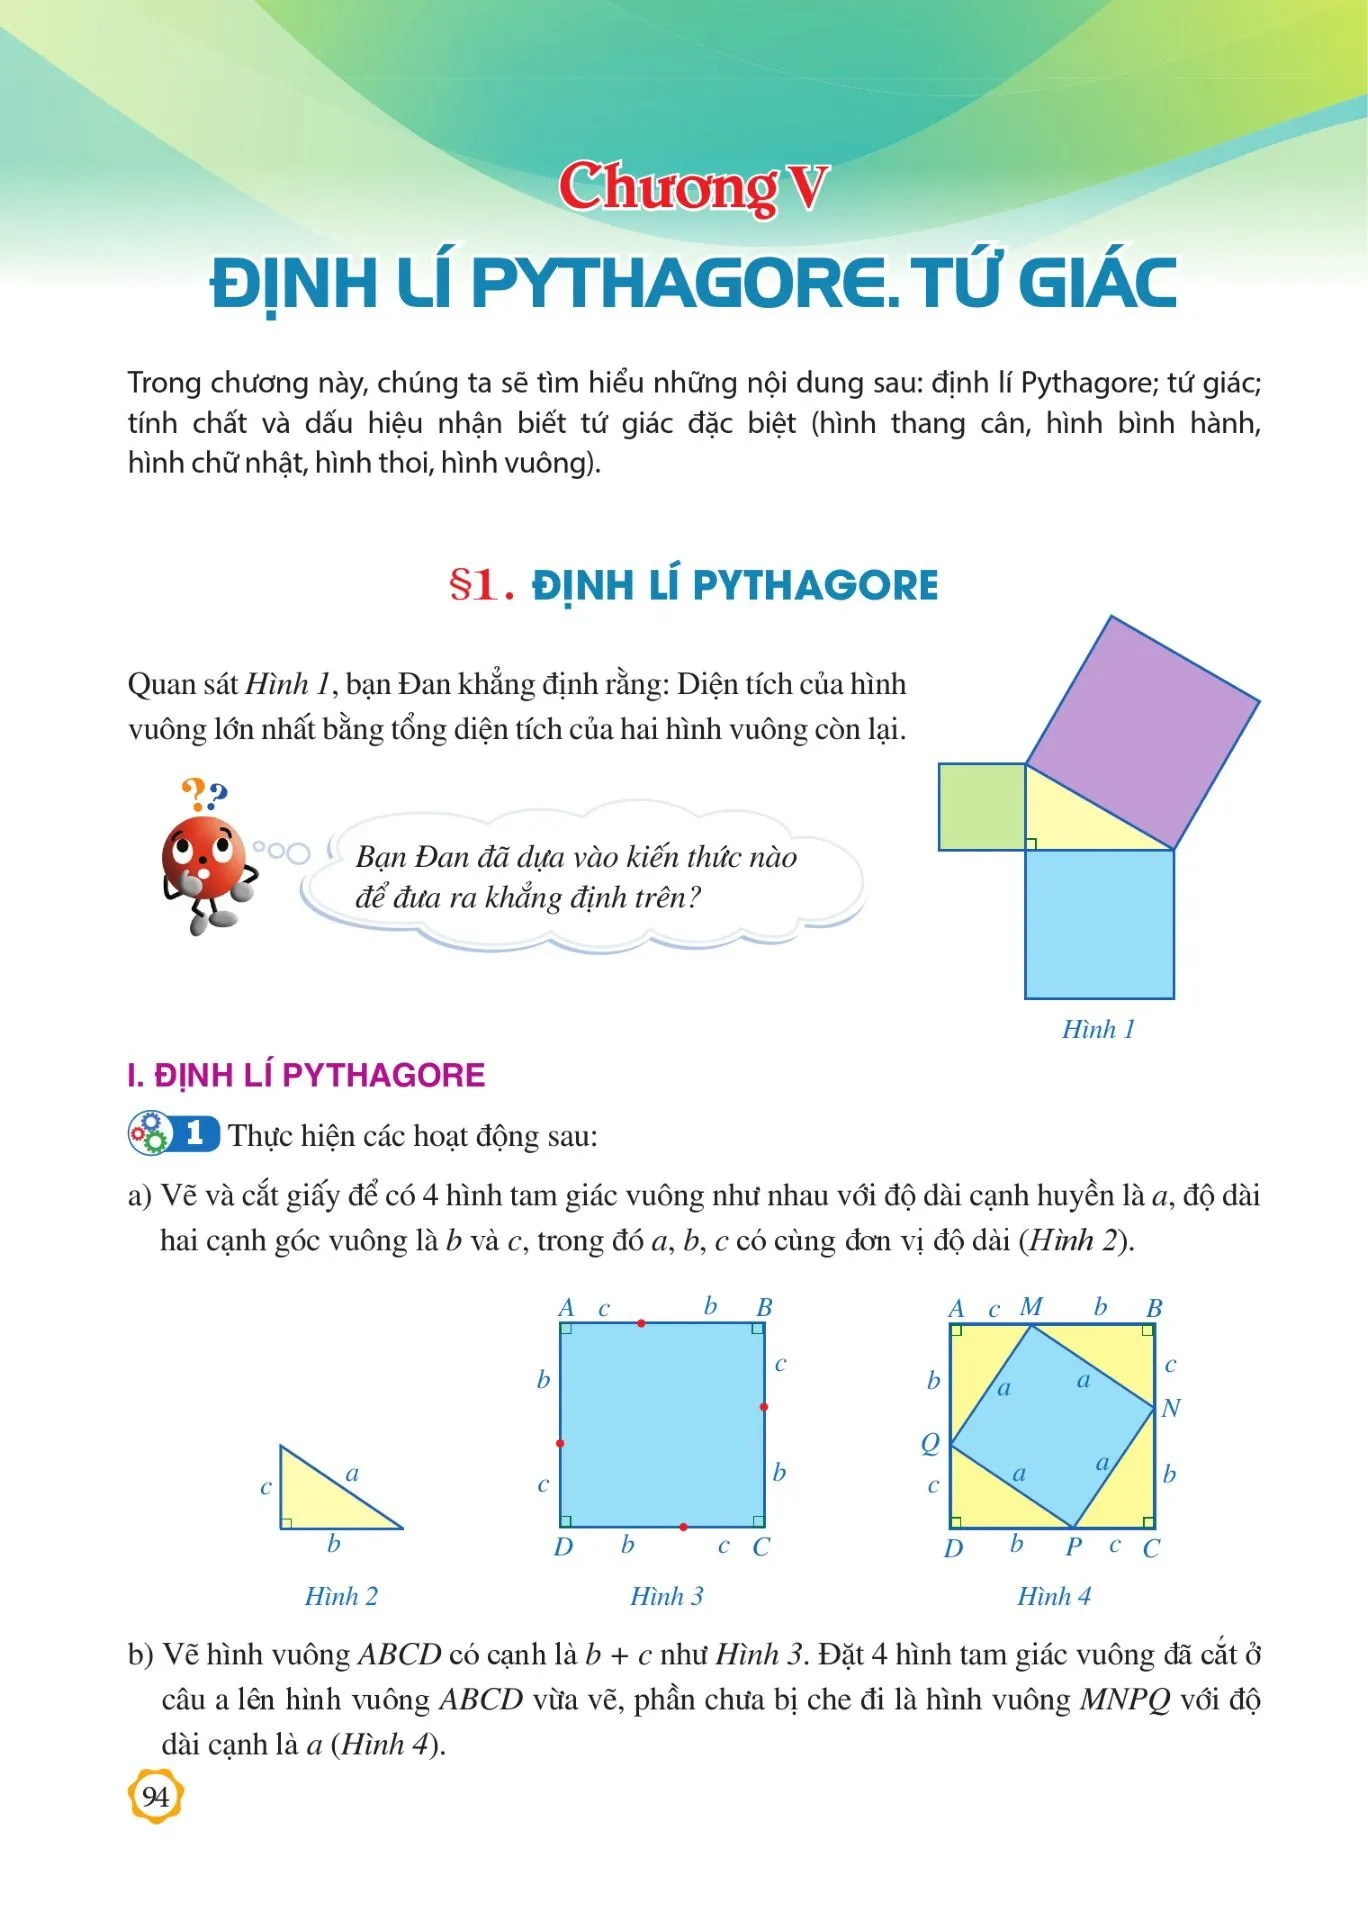 §1. Định lí Pythagore